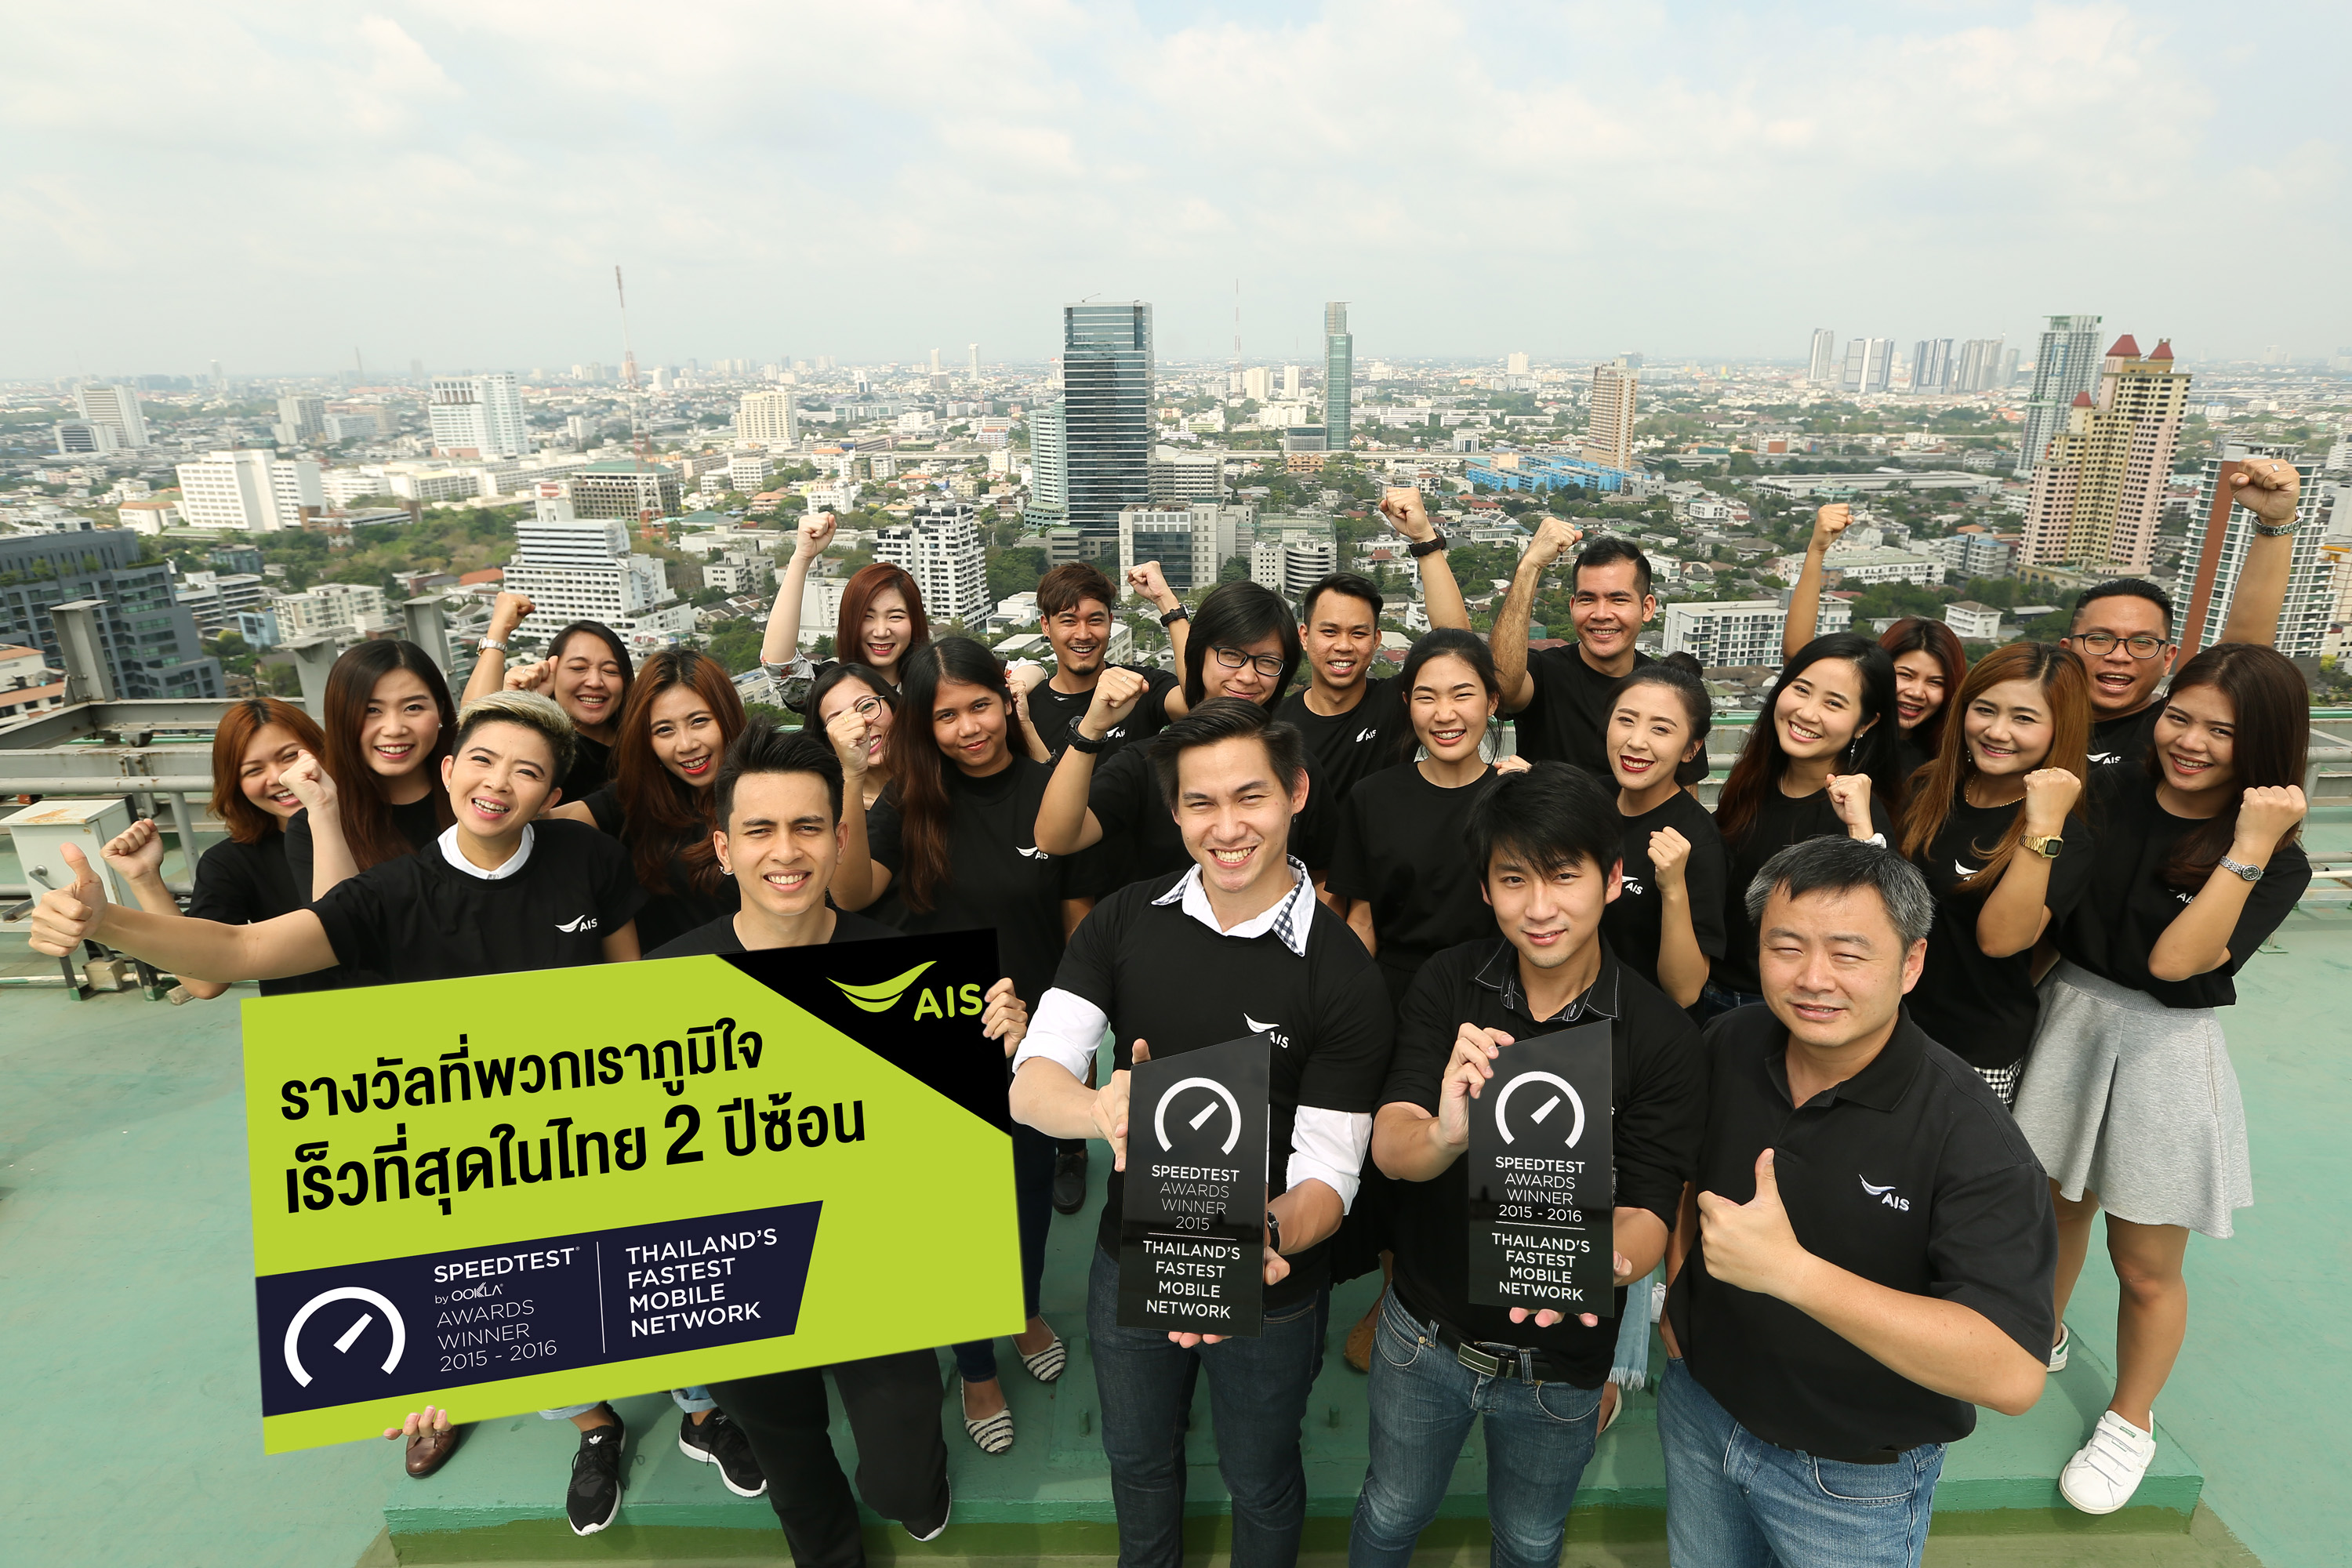 170310 Pic ชาวเอไอเอส ยืนยัน ผู้นำตัวจริง เครือข่ายมือถือ 4G เร็ว แรงที่สุด อันดับ 1 ของไทย 2 ปีซ้อน | speed test | AIS ผู้นำตัวจริง “เครือข่ายมือถือ 4G เร็ว แรงที่สุด” อันดับ 1 ของไทย 2 ปีซ้อนการันตีโดย Ookla SpeedTest